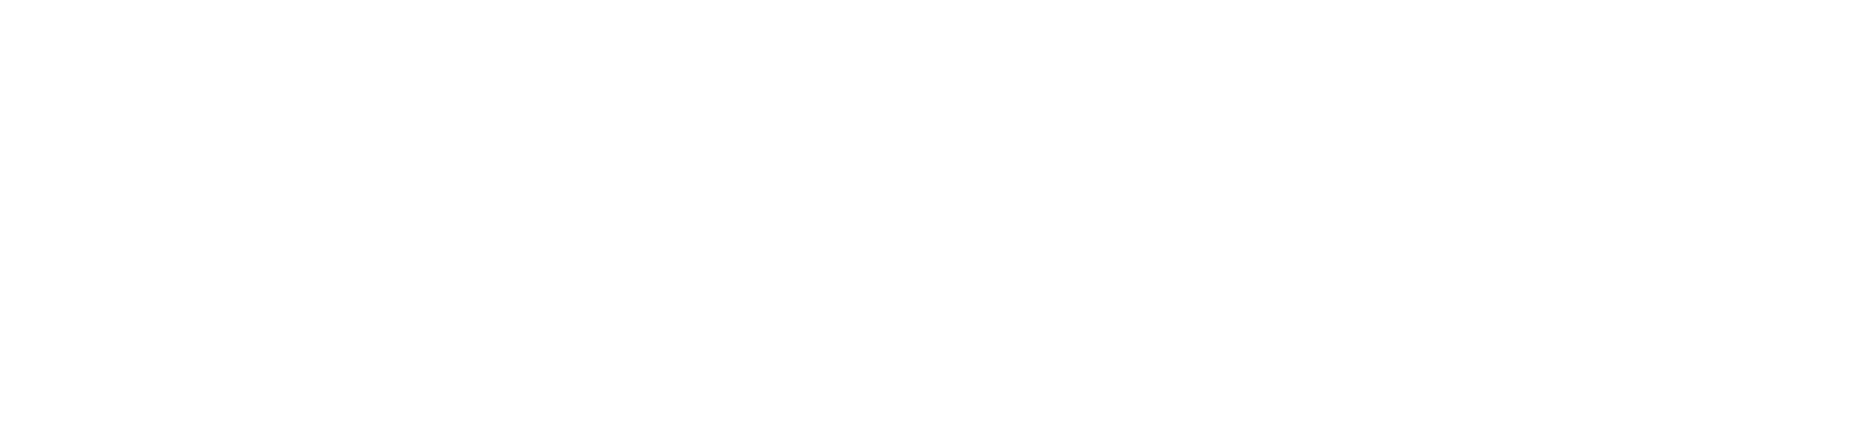 桃園協拍中心 logo圖